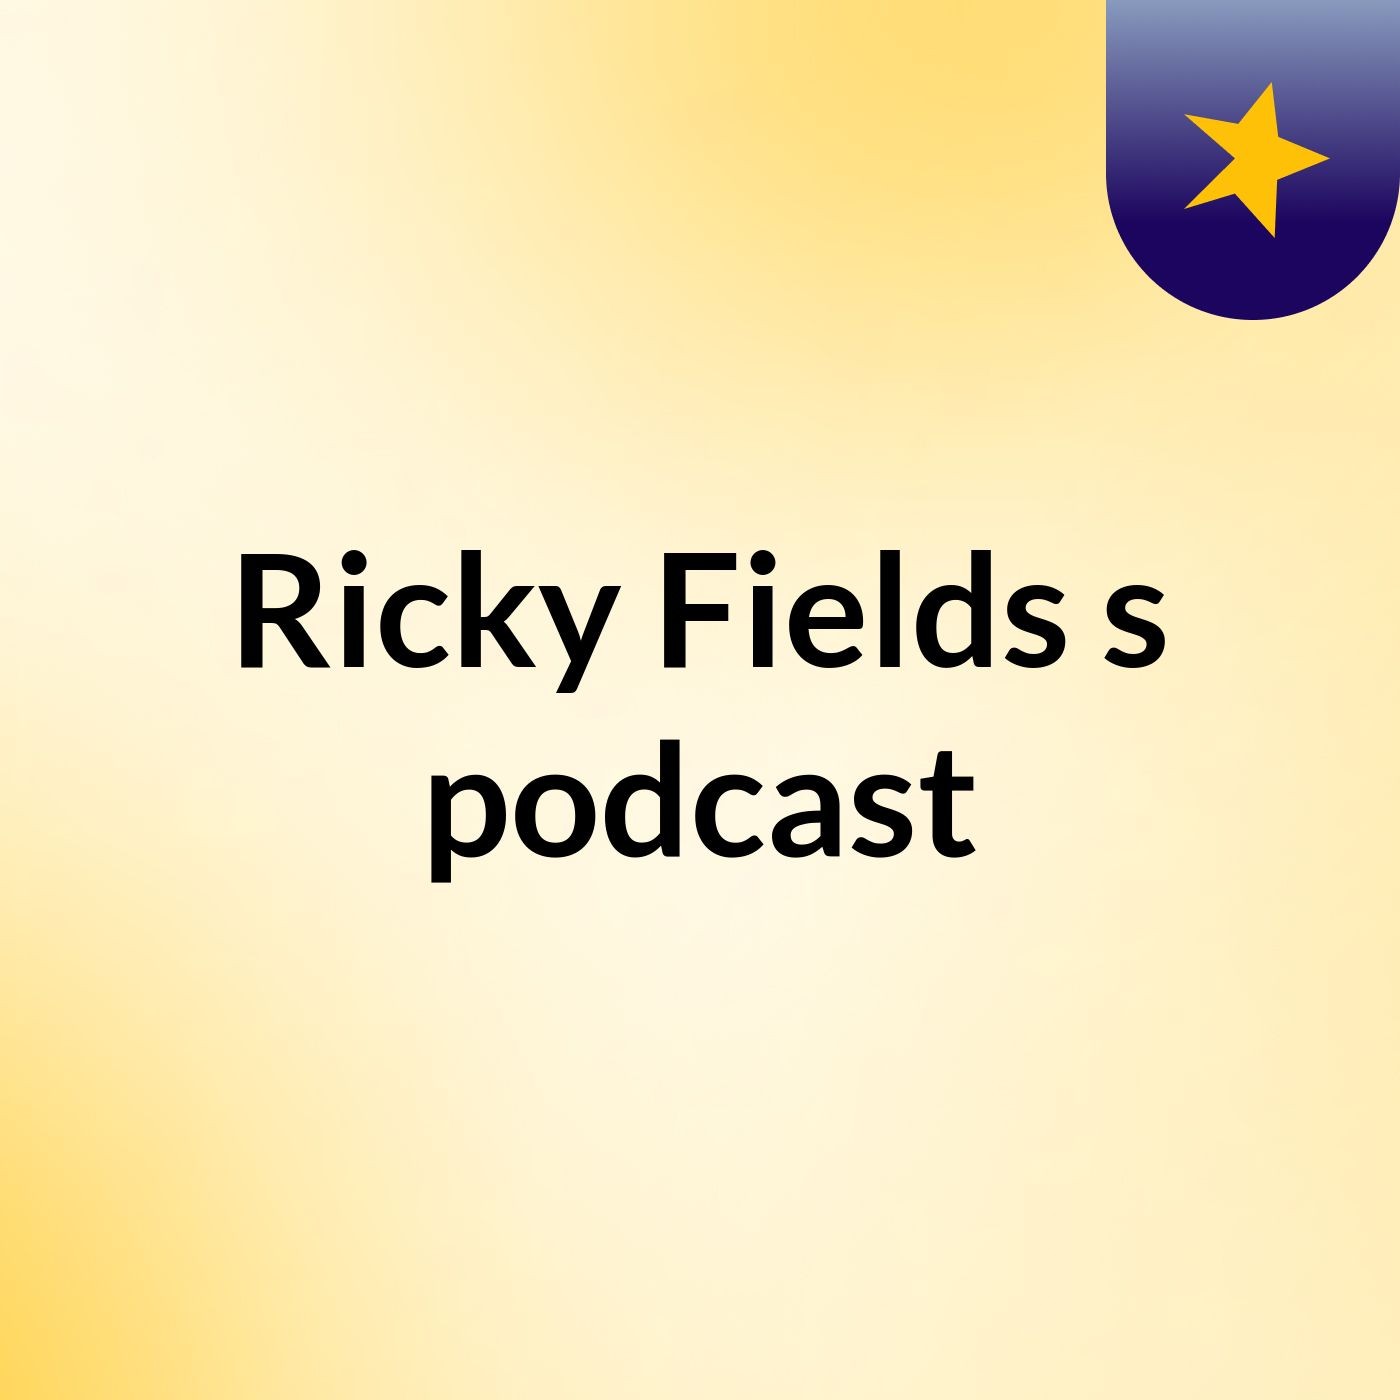 Ricky Fields's podcast